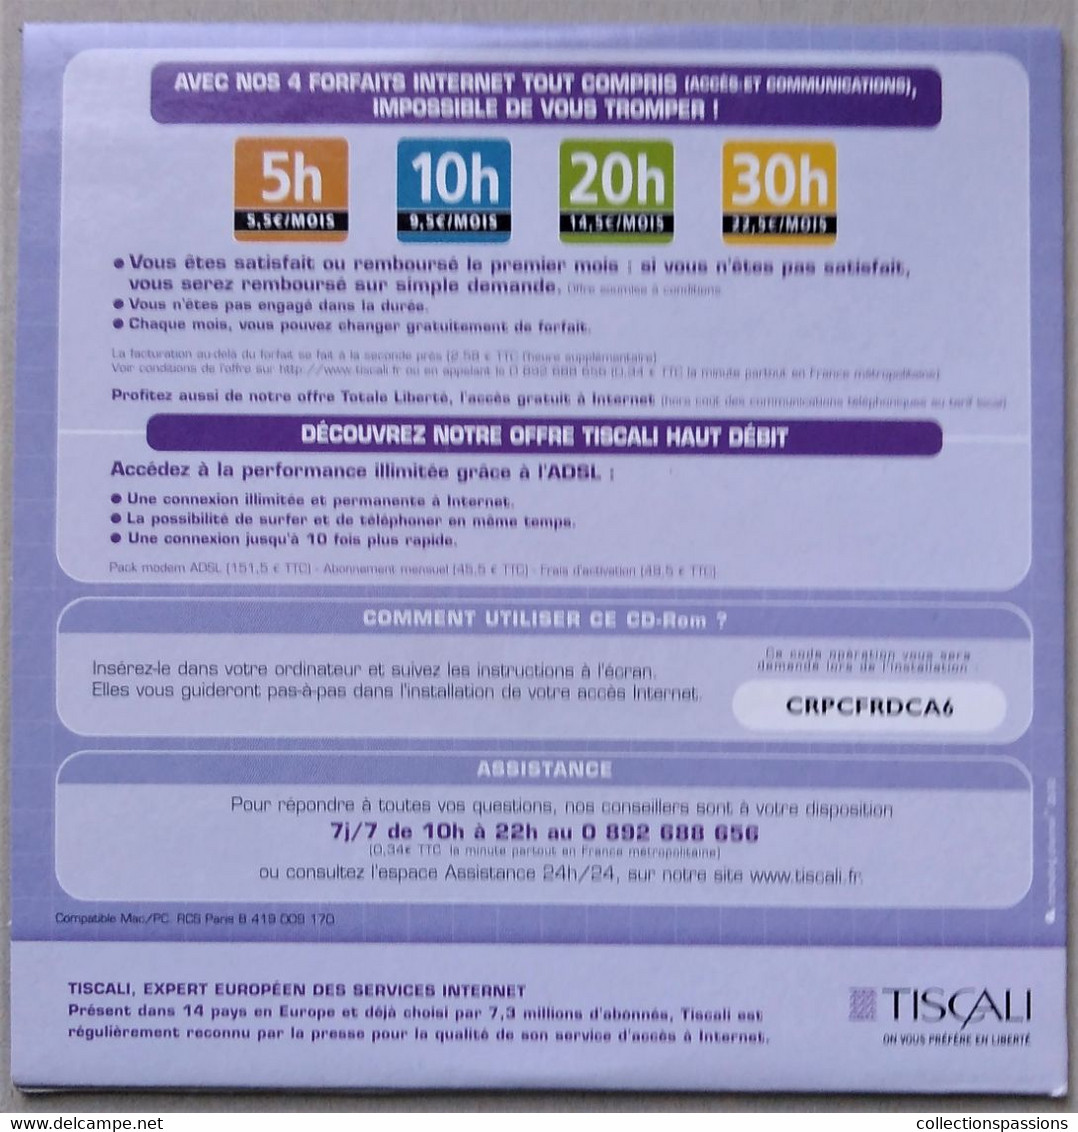 - Pochette CD ROM De Connexion Internet - TISCALI - - Kits De Connexion Internet